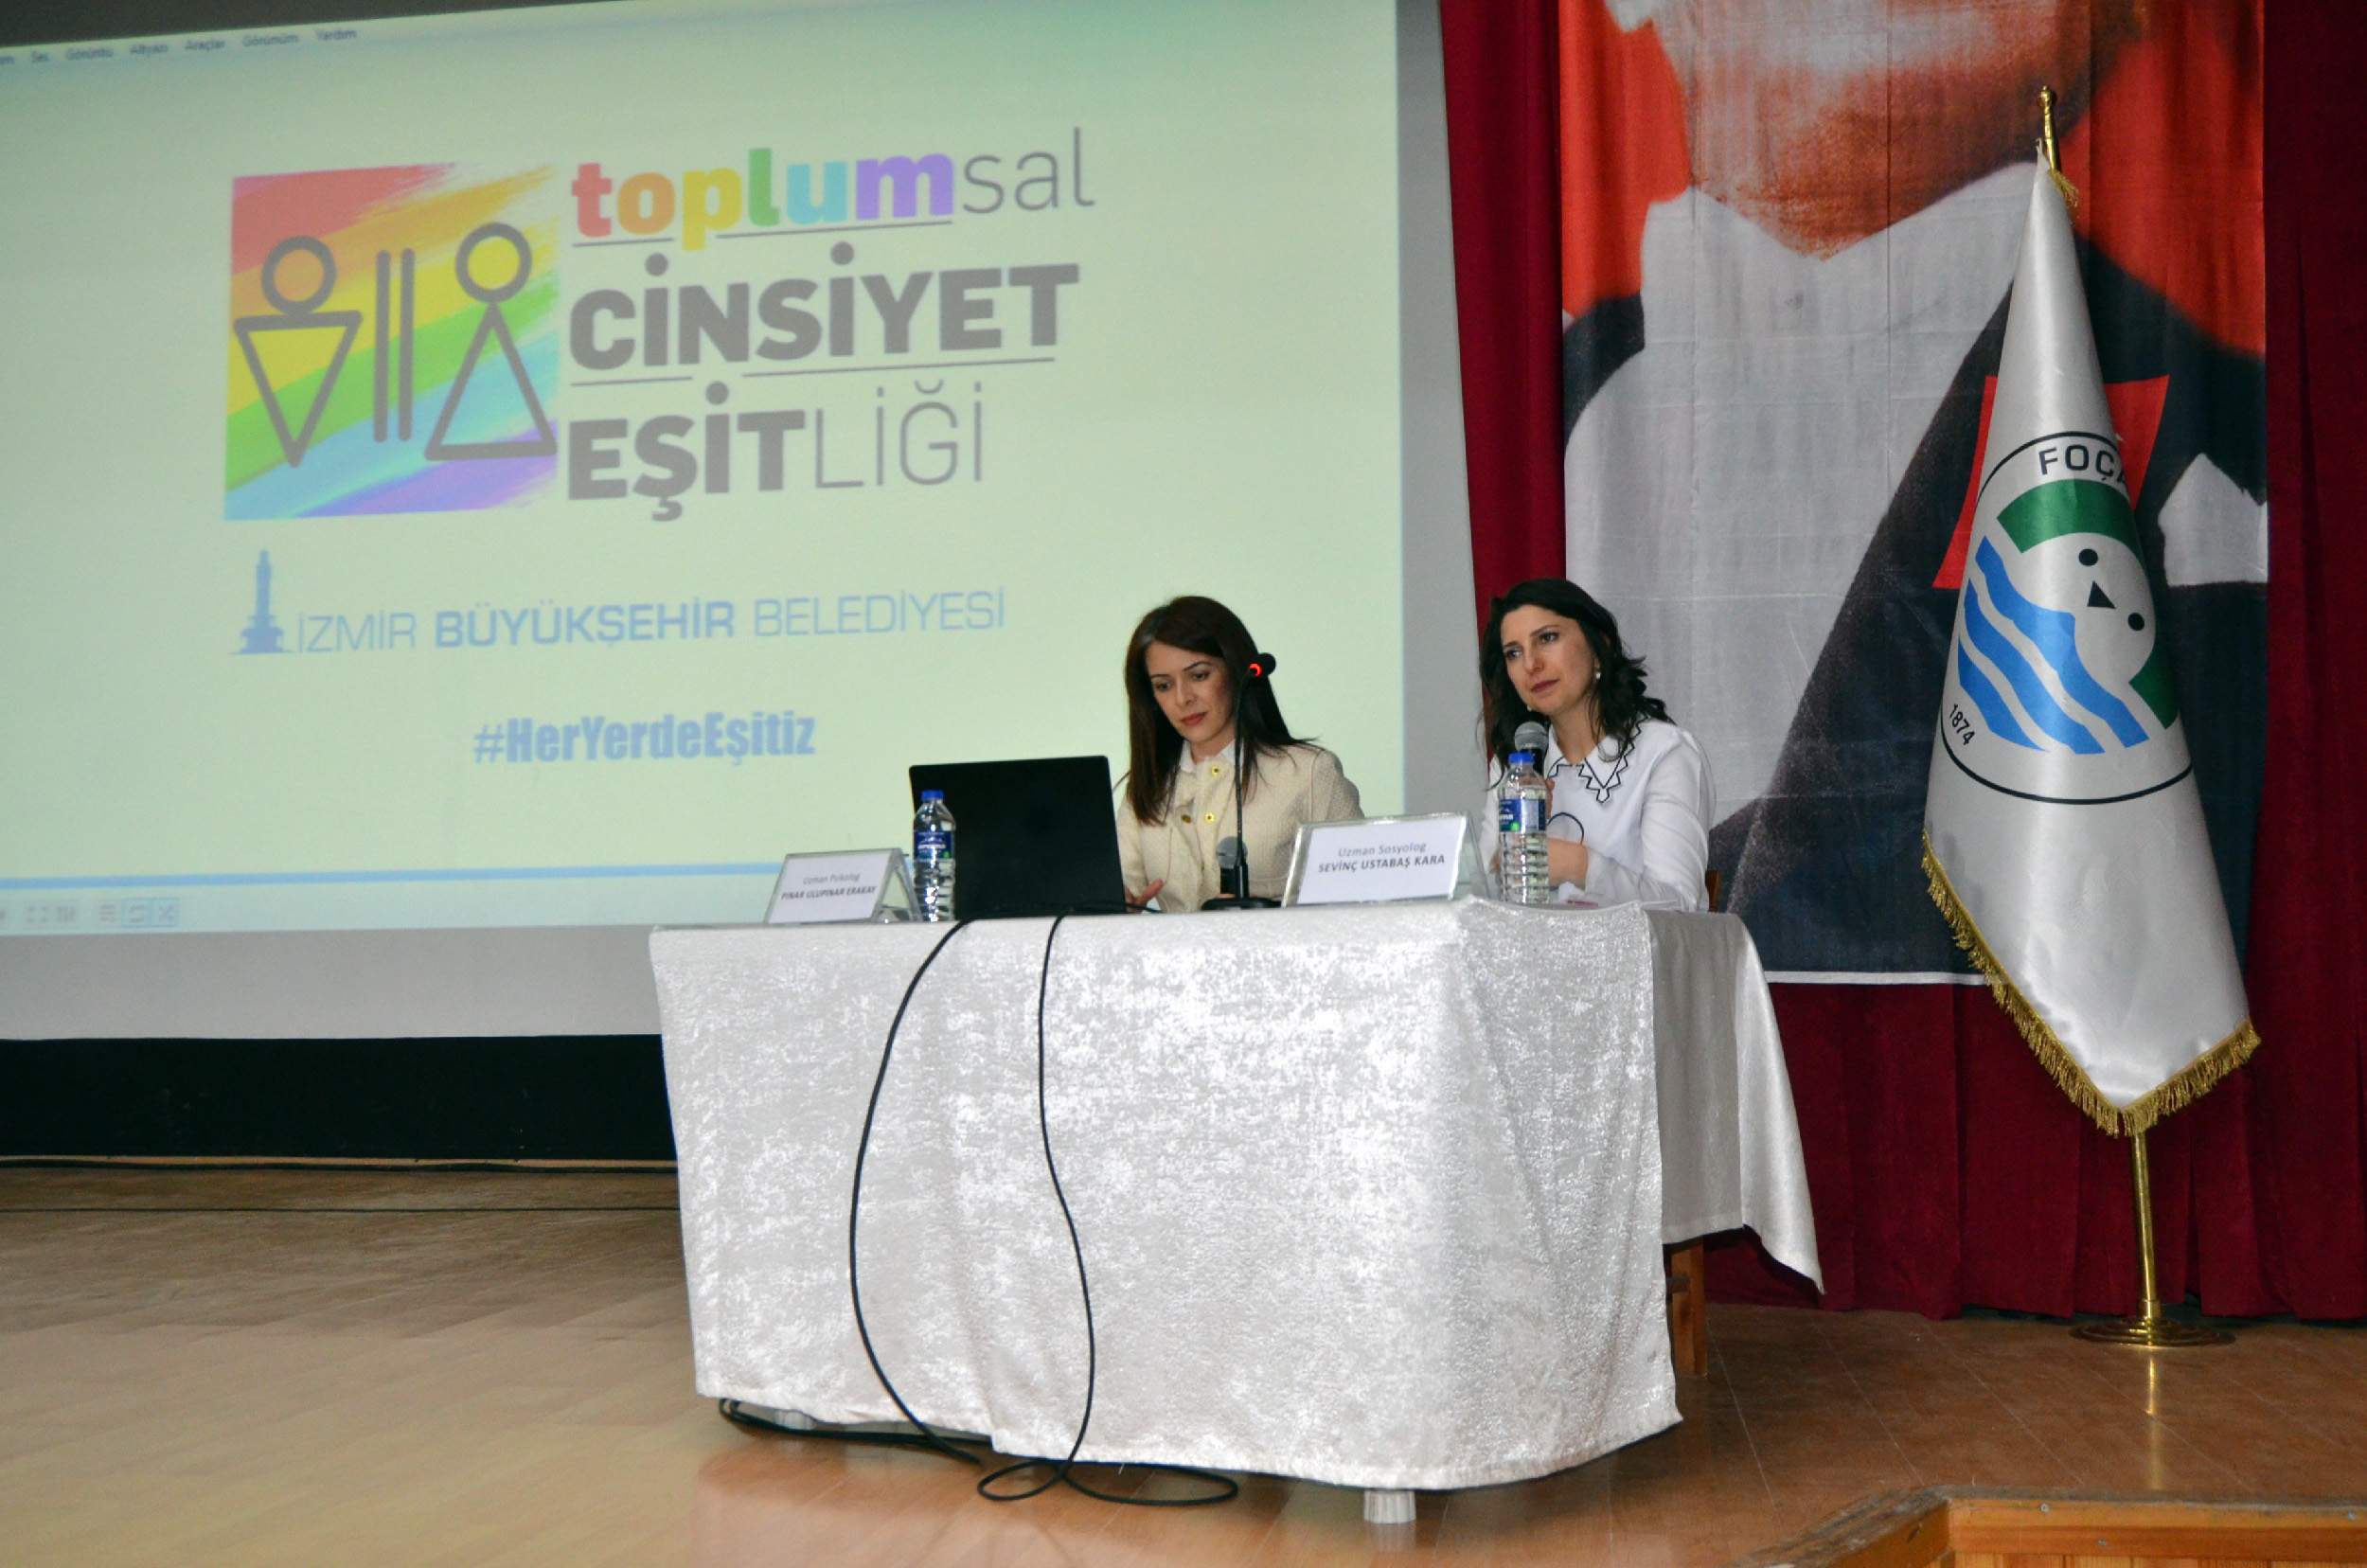 Büyükşehir’den 30 ilçede toplumsal cinsiyet eşitliği semineri